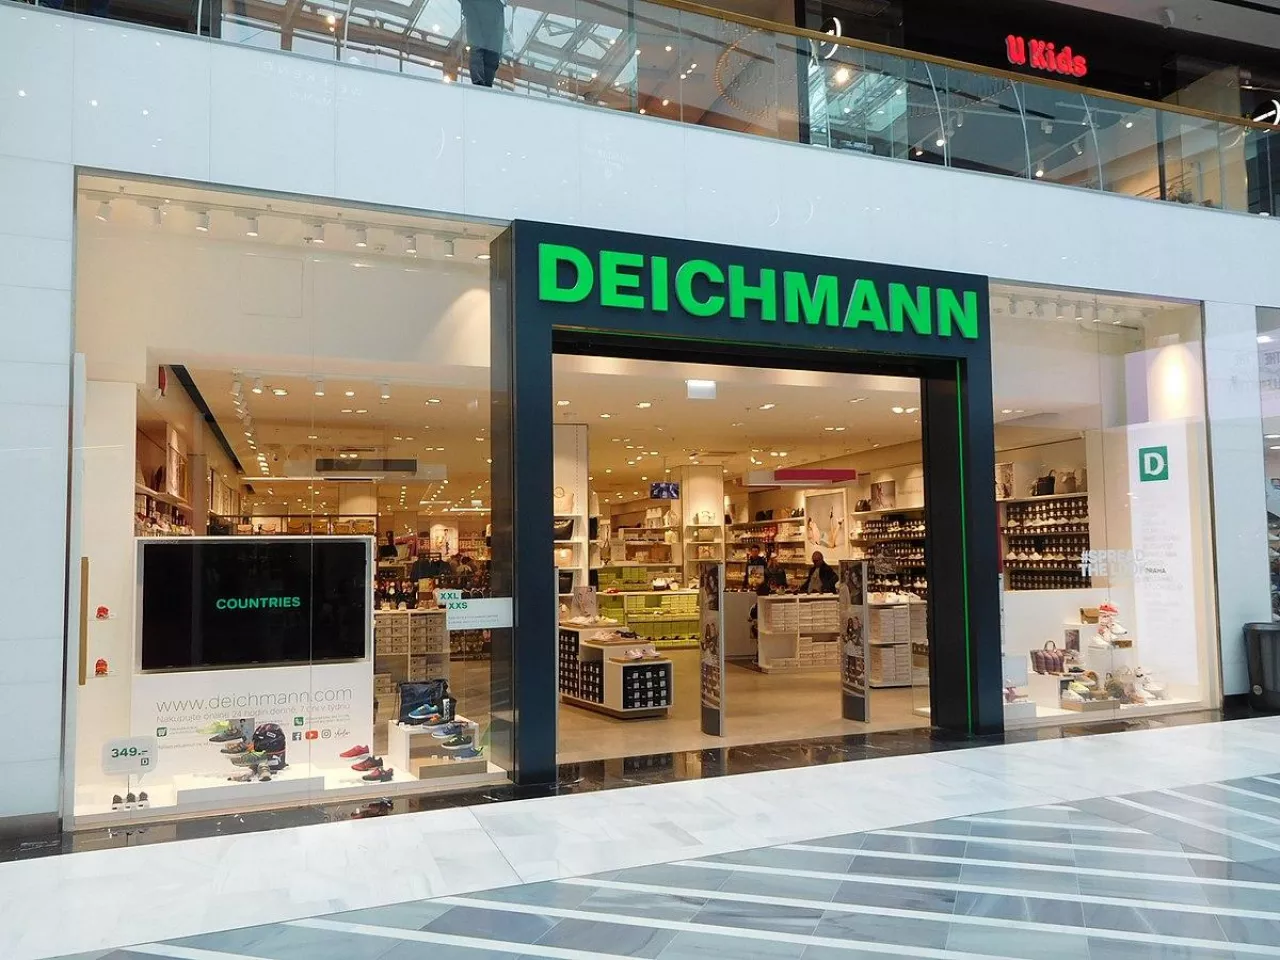 Na zdj. sklep sieci Deichmann w Pradze (fot. Jiri Matejicek/Wikimedia Commons, na lic. CC BY-SA 3.0)